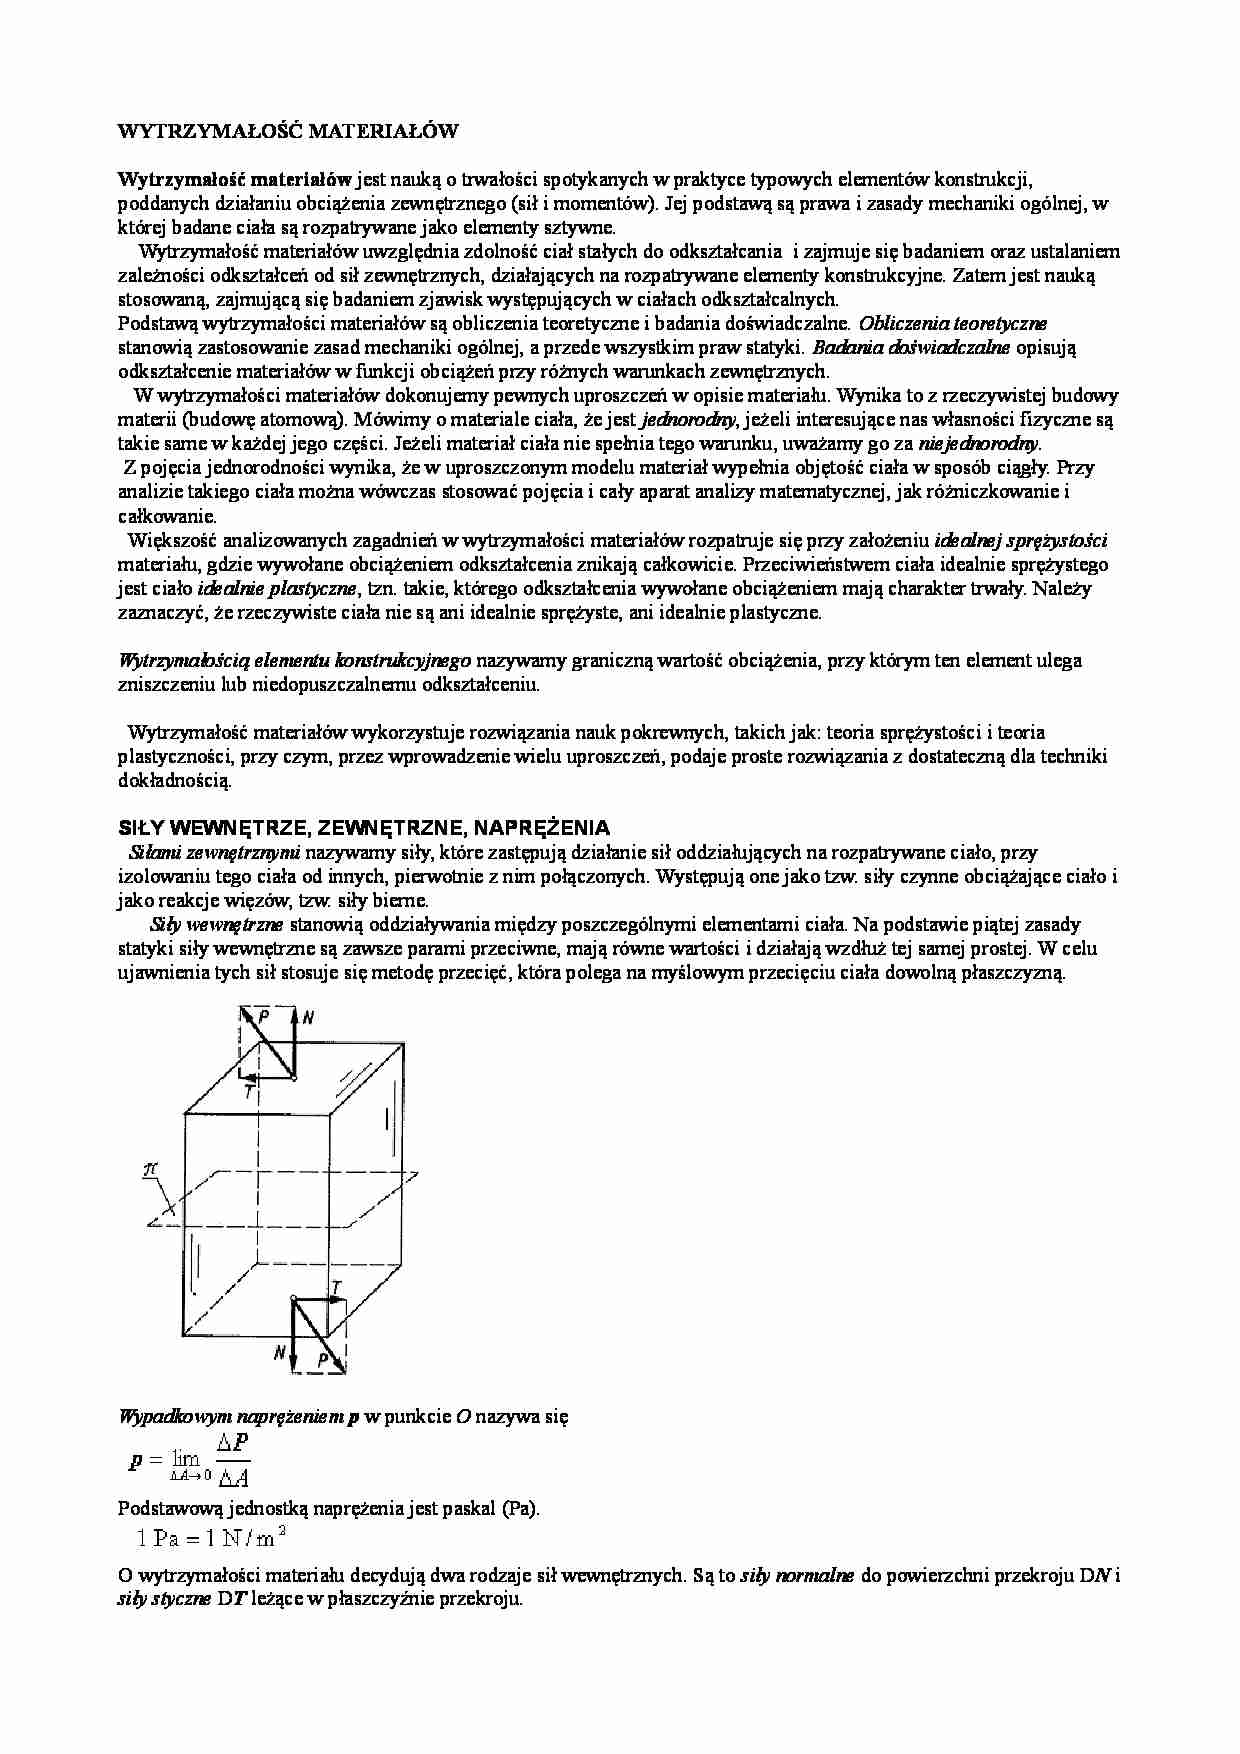 Mechanika techniczna- Wytrzymałość materiałów - strona 1